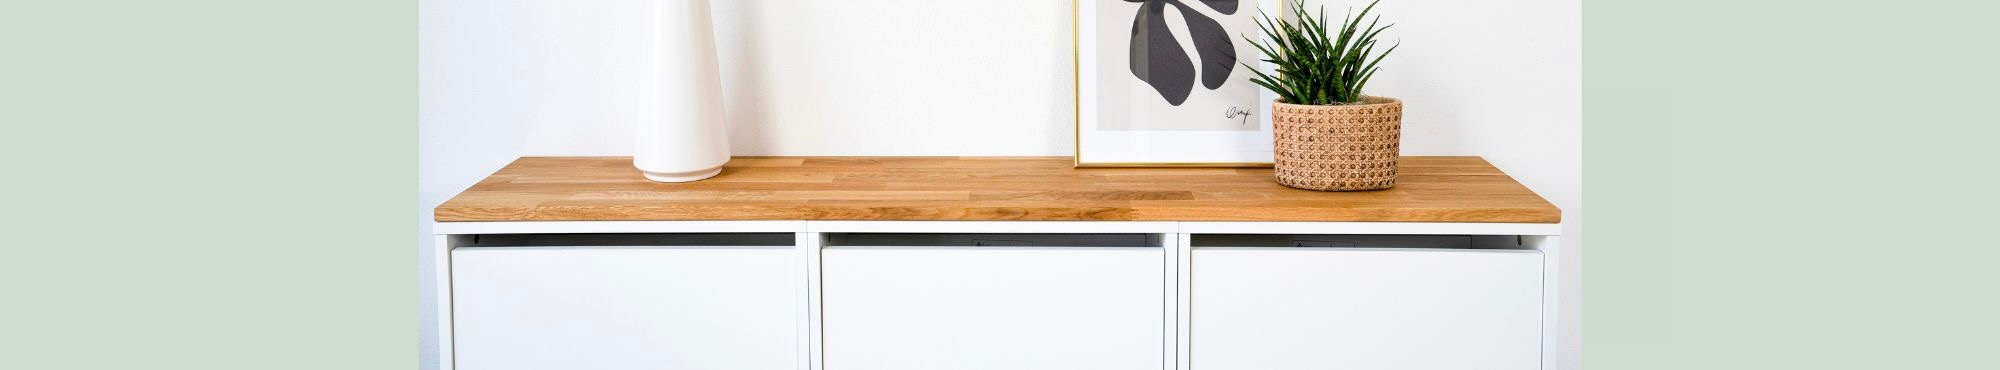 Ikea Bissa Schuhschrank mit Deckplatte aus Eichenholz